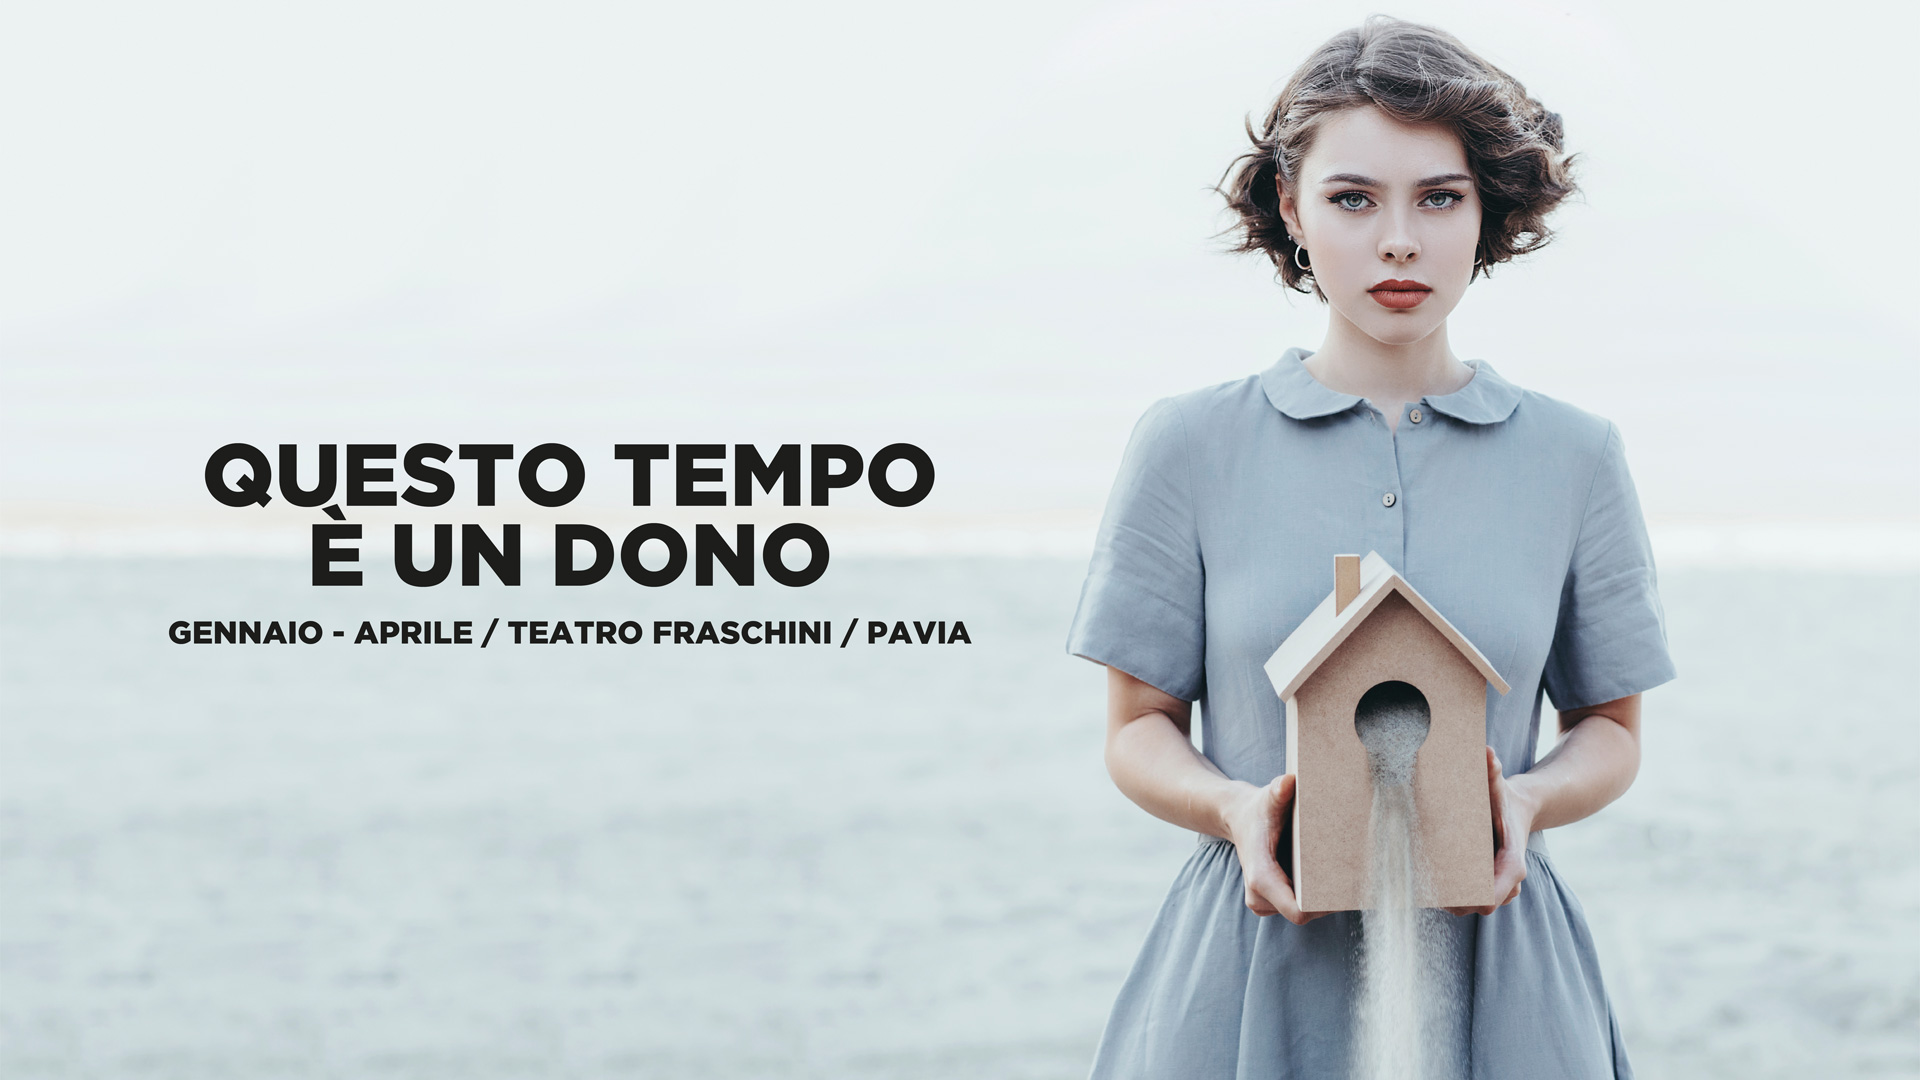 QUESTO TEMPO È UN DONO: la seconda parte della stagione del Teatro Fraschini. Da gennaio a Pavia.